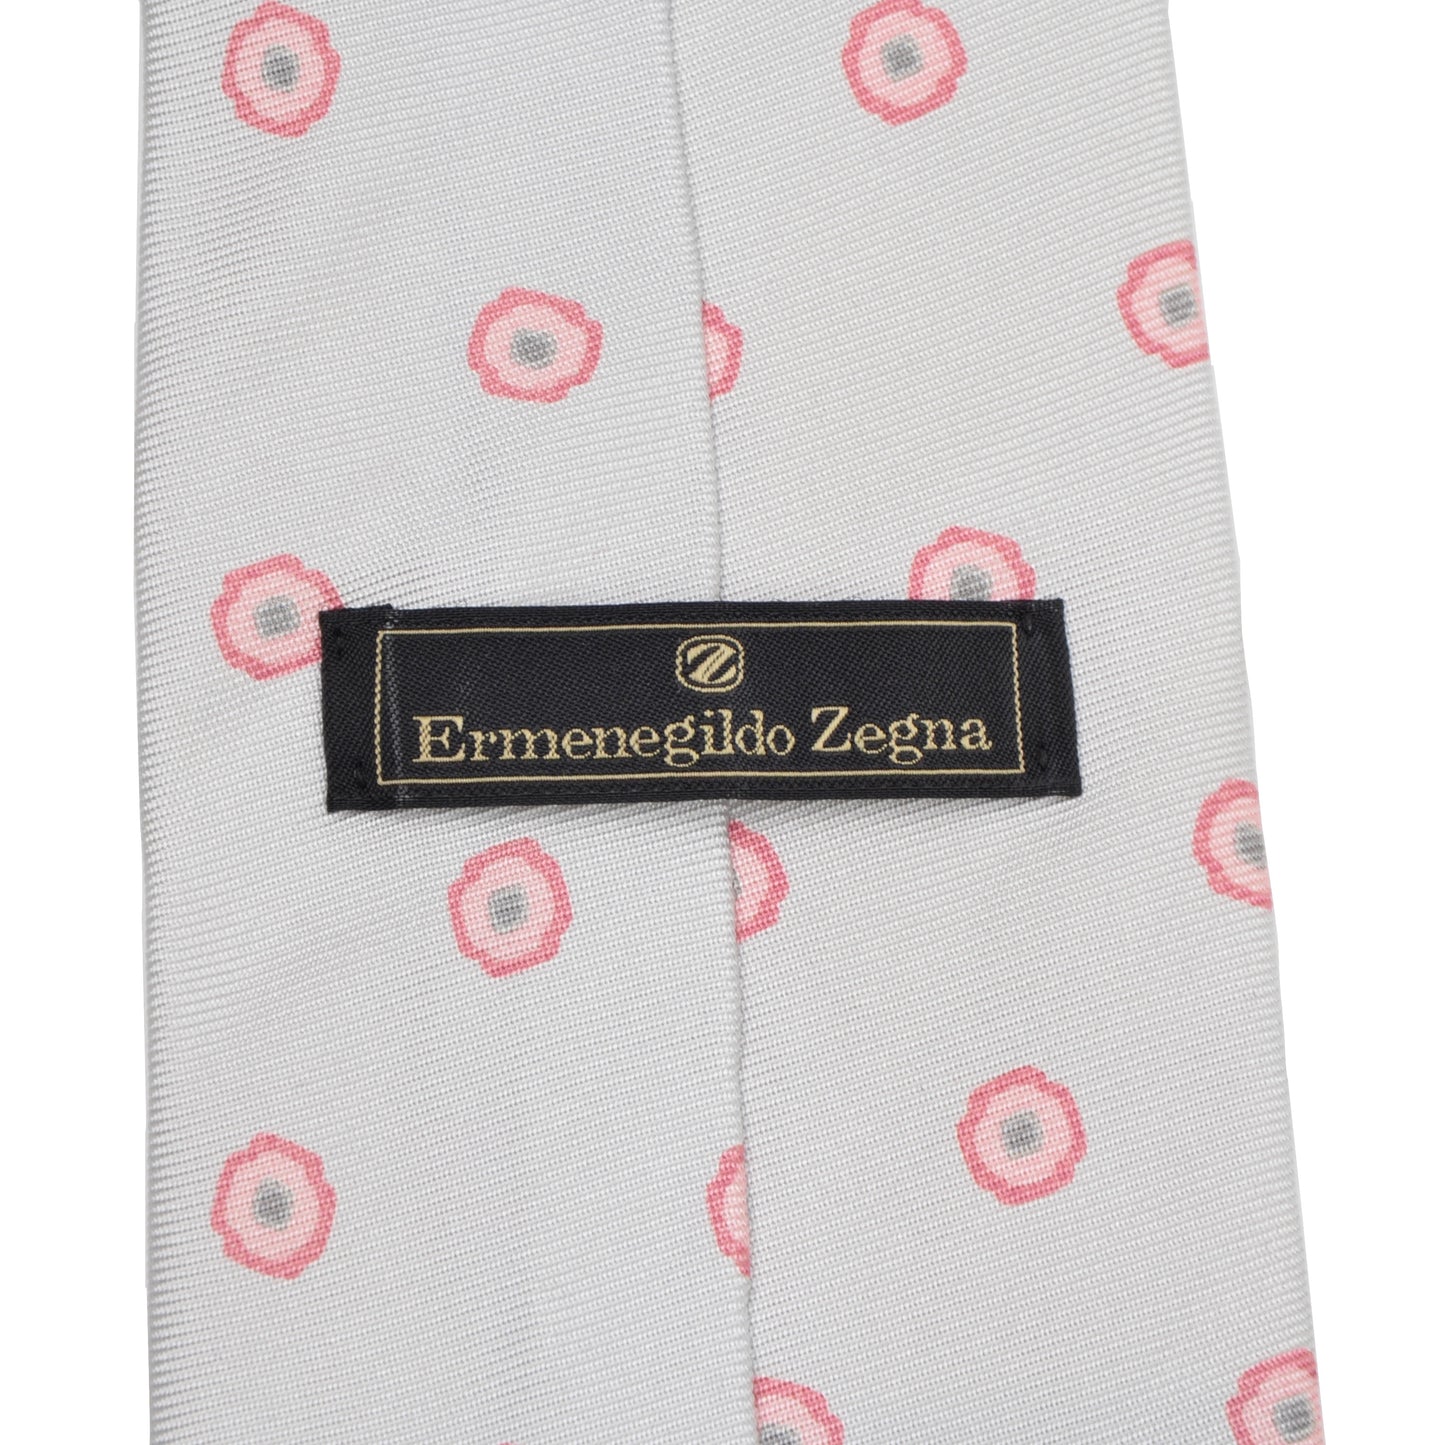 Ermenegildo Zegna Printed Silk Tie - Light Grey